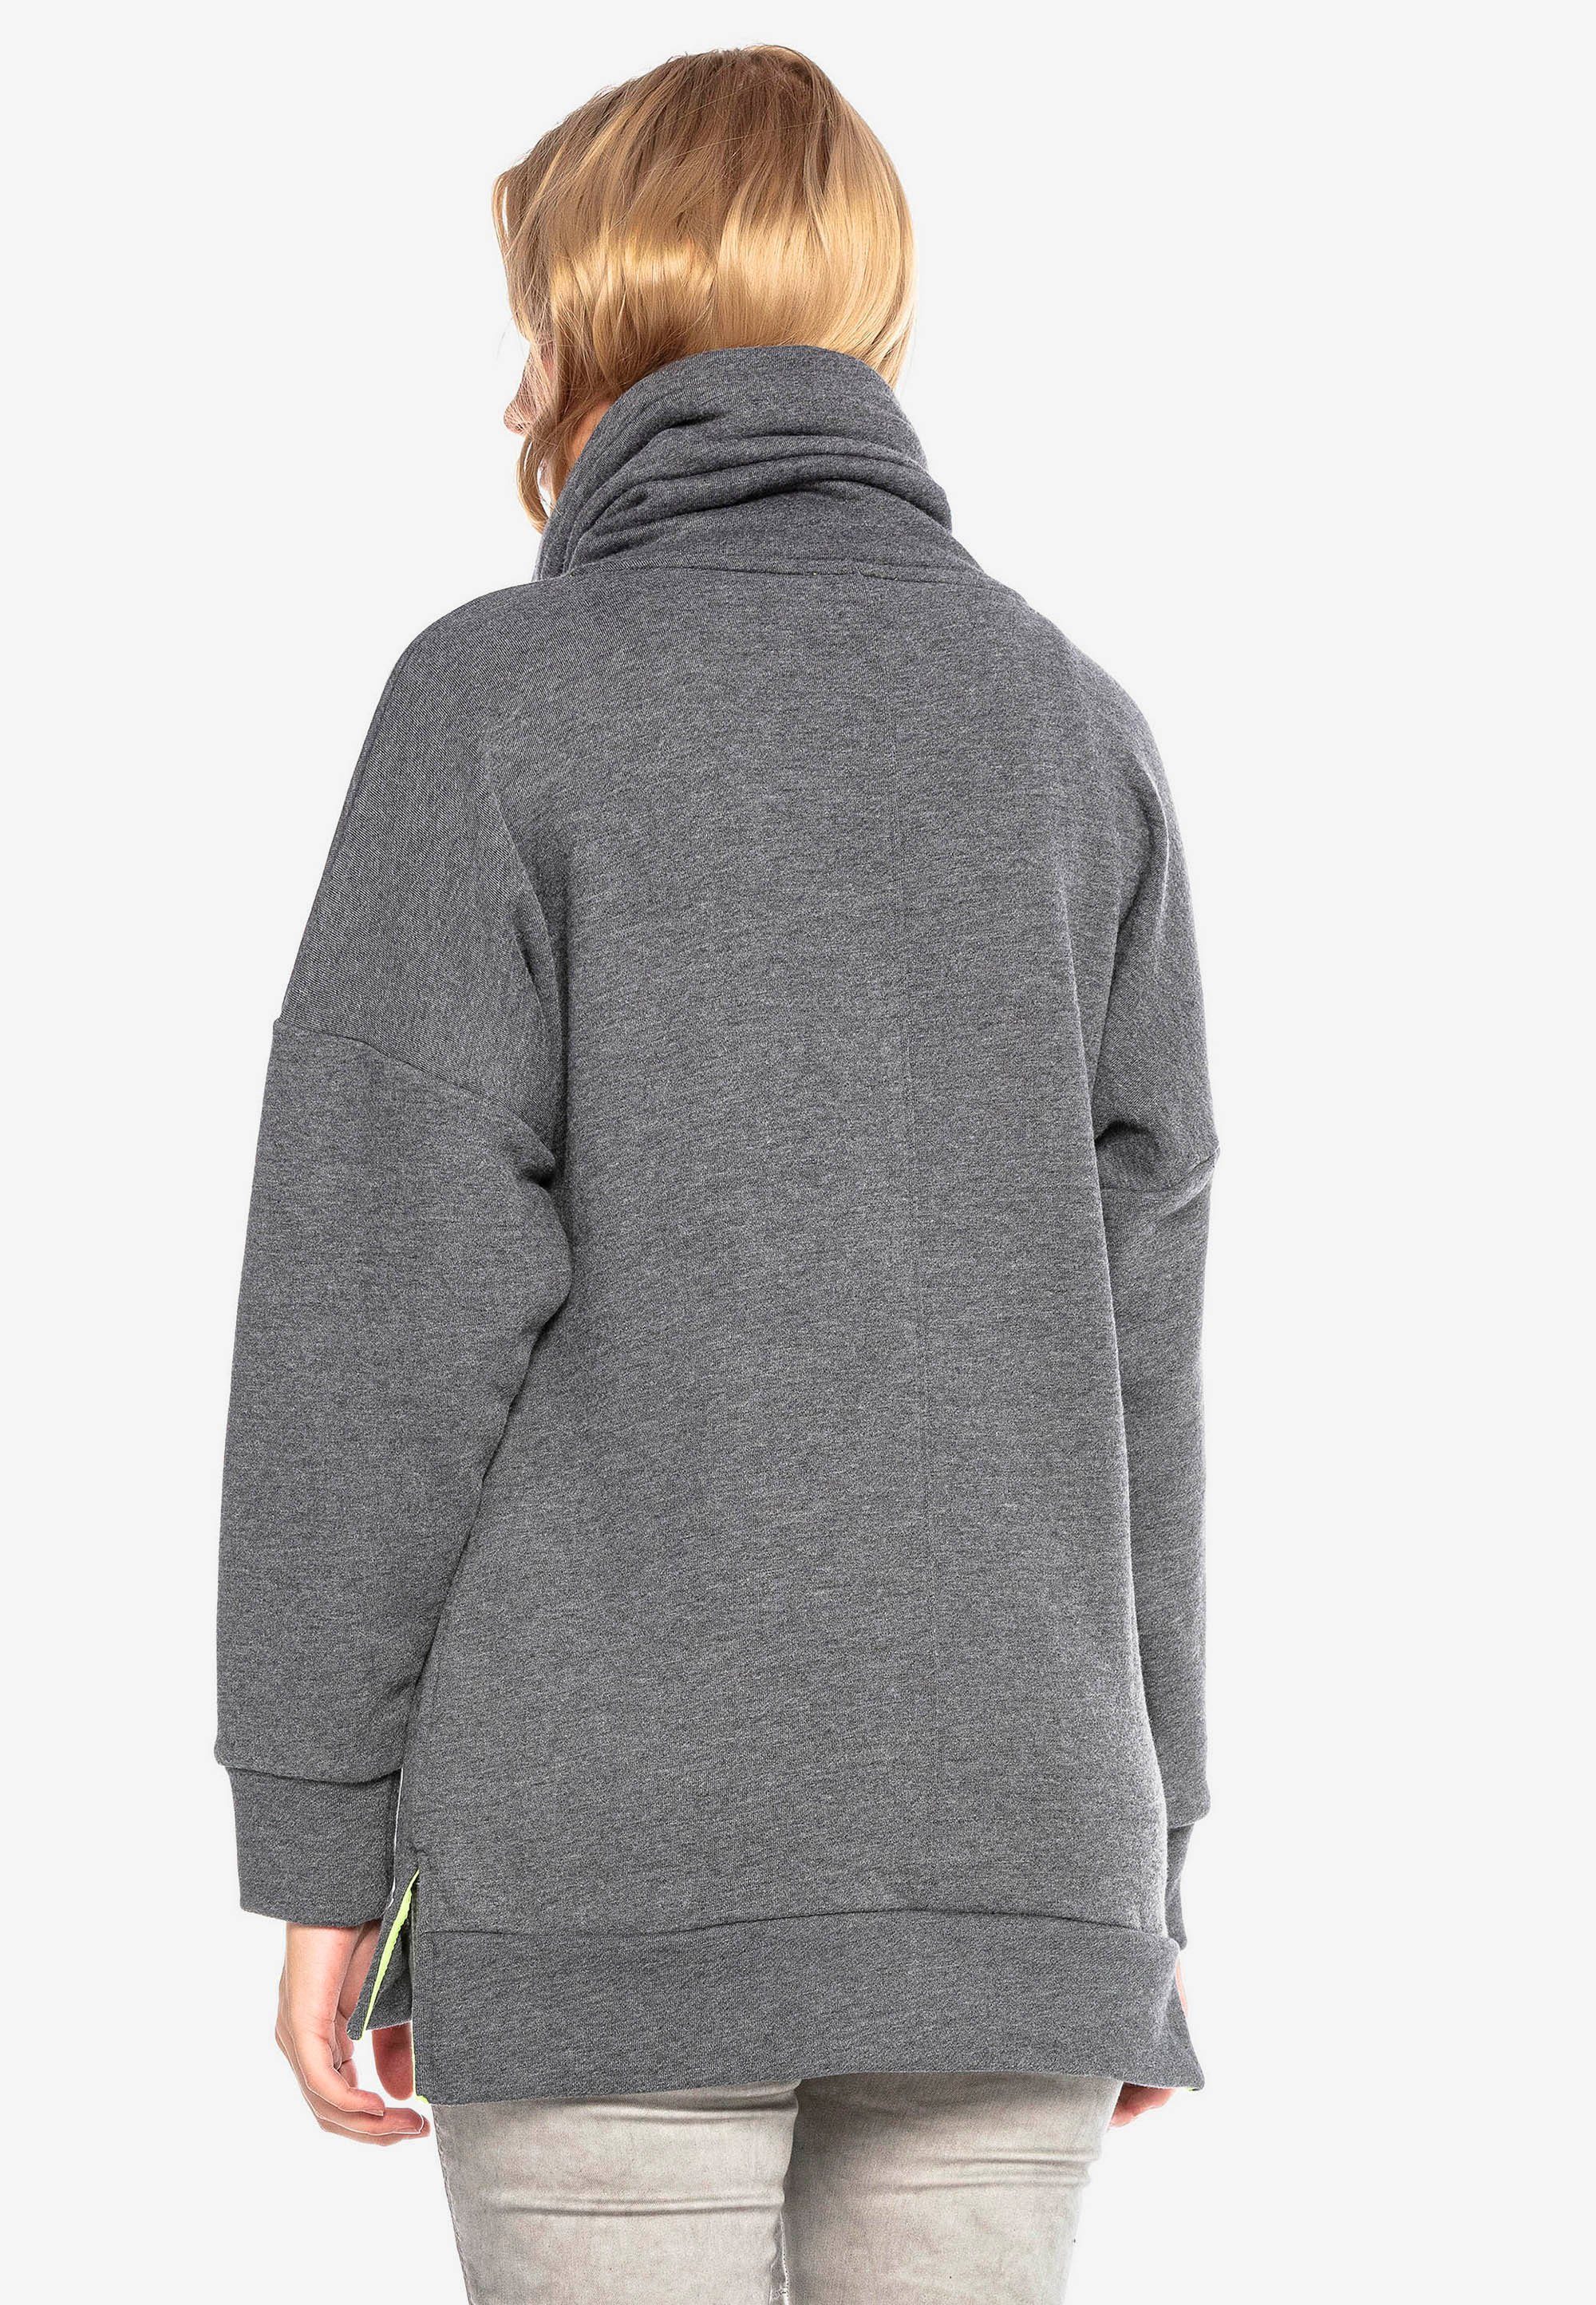 Damen Pullover Cipo & Baxx Sweatshirt mit hohem Schallkragen